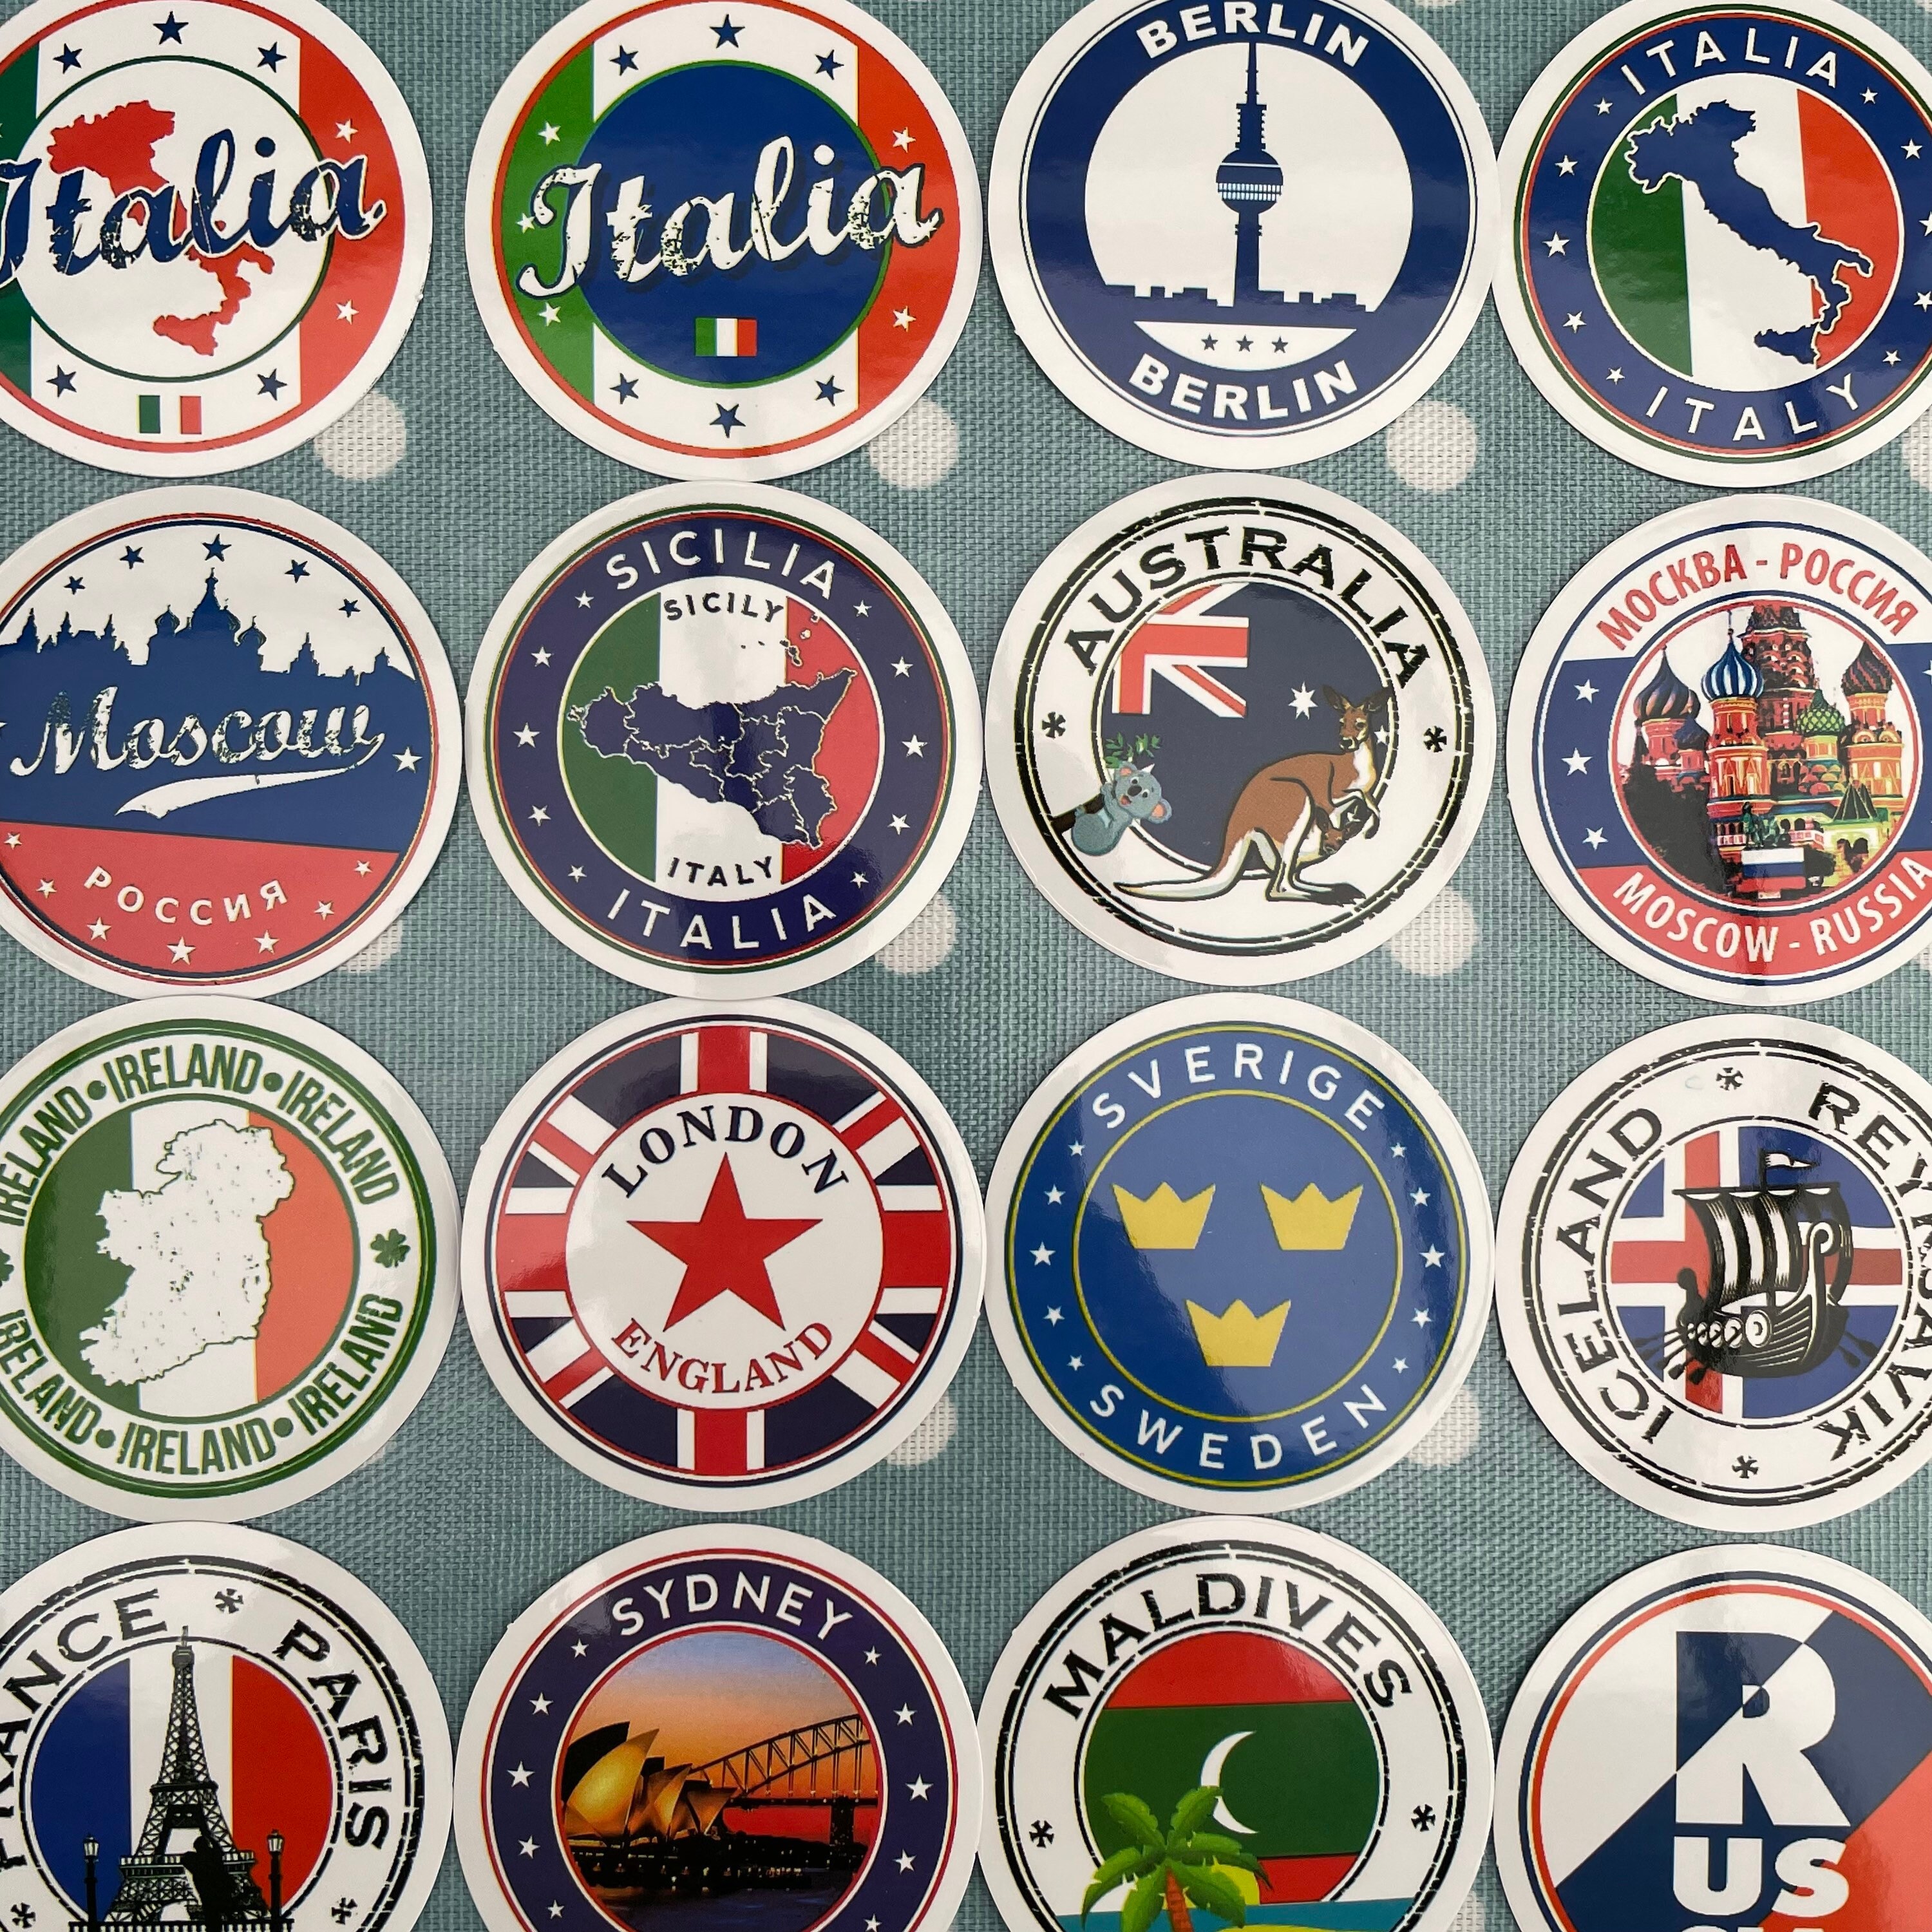 World Travel Sticker Symbols Set Variety: Stock-Vektorgrafik (Lizenzfrei)  142253134